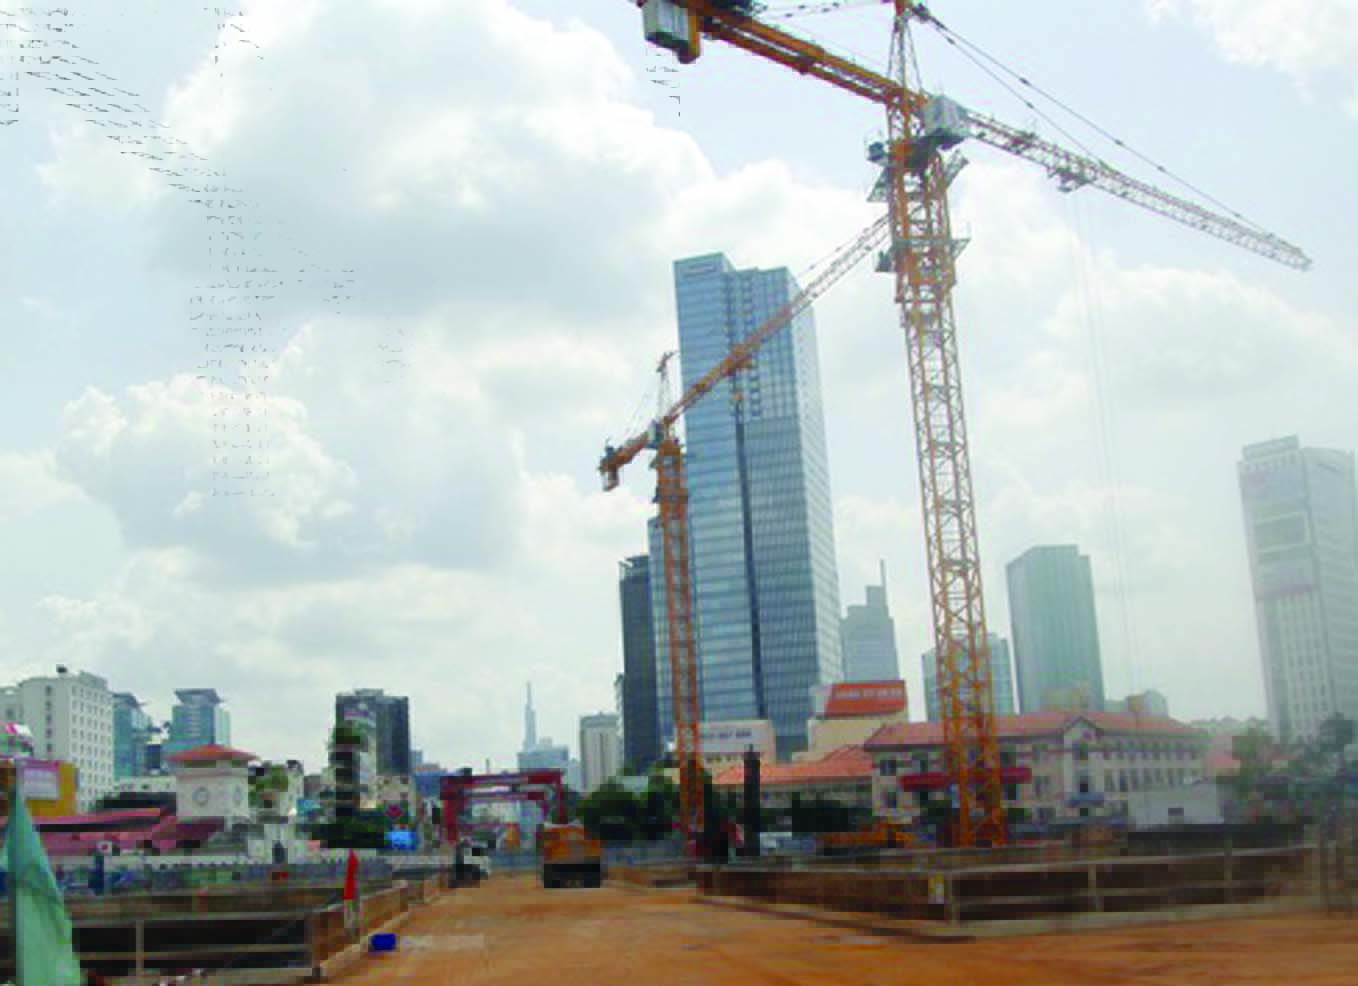  Nếu không hạn chế xây dựng nhà cao tầng, khu vực trung tâm TP HCM khó giữ được chất lượng sống như hiện nay.